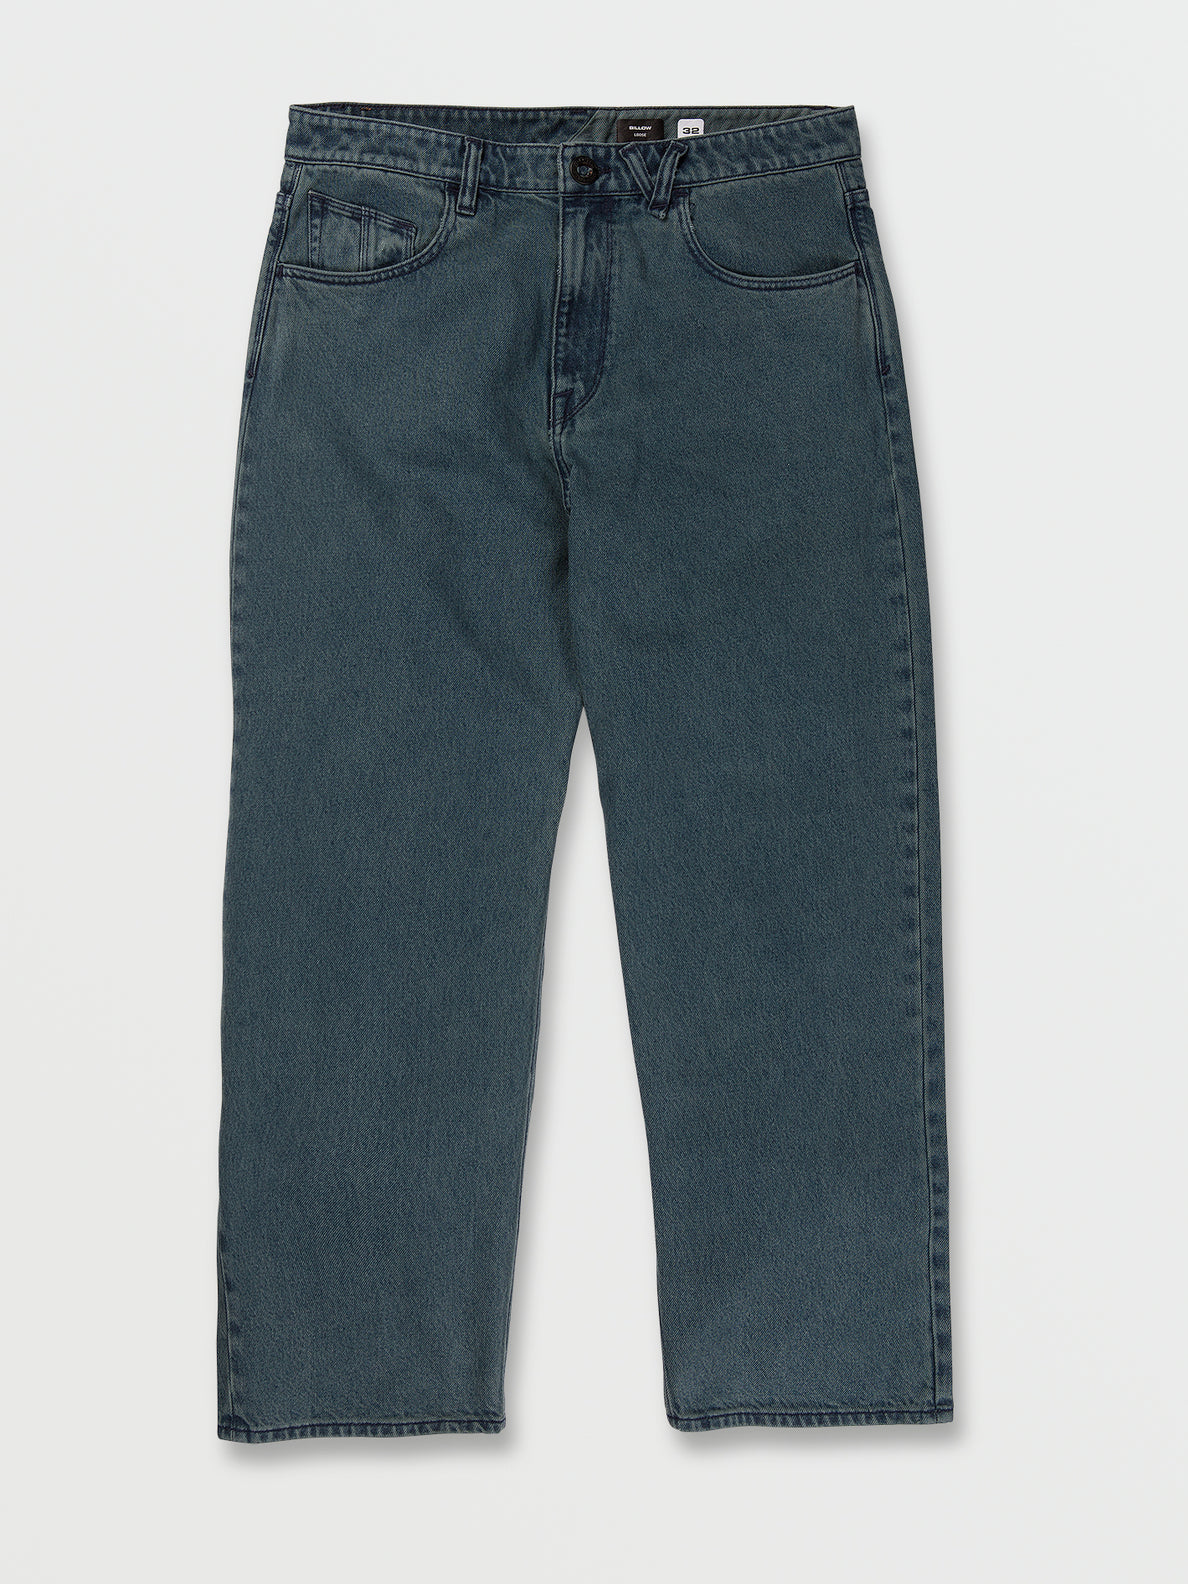 Billow Loose Fit Jeans - Black - Marina Blue (A1932205_MRB) [01]